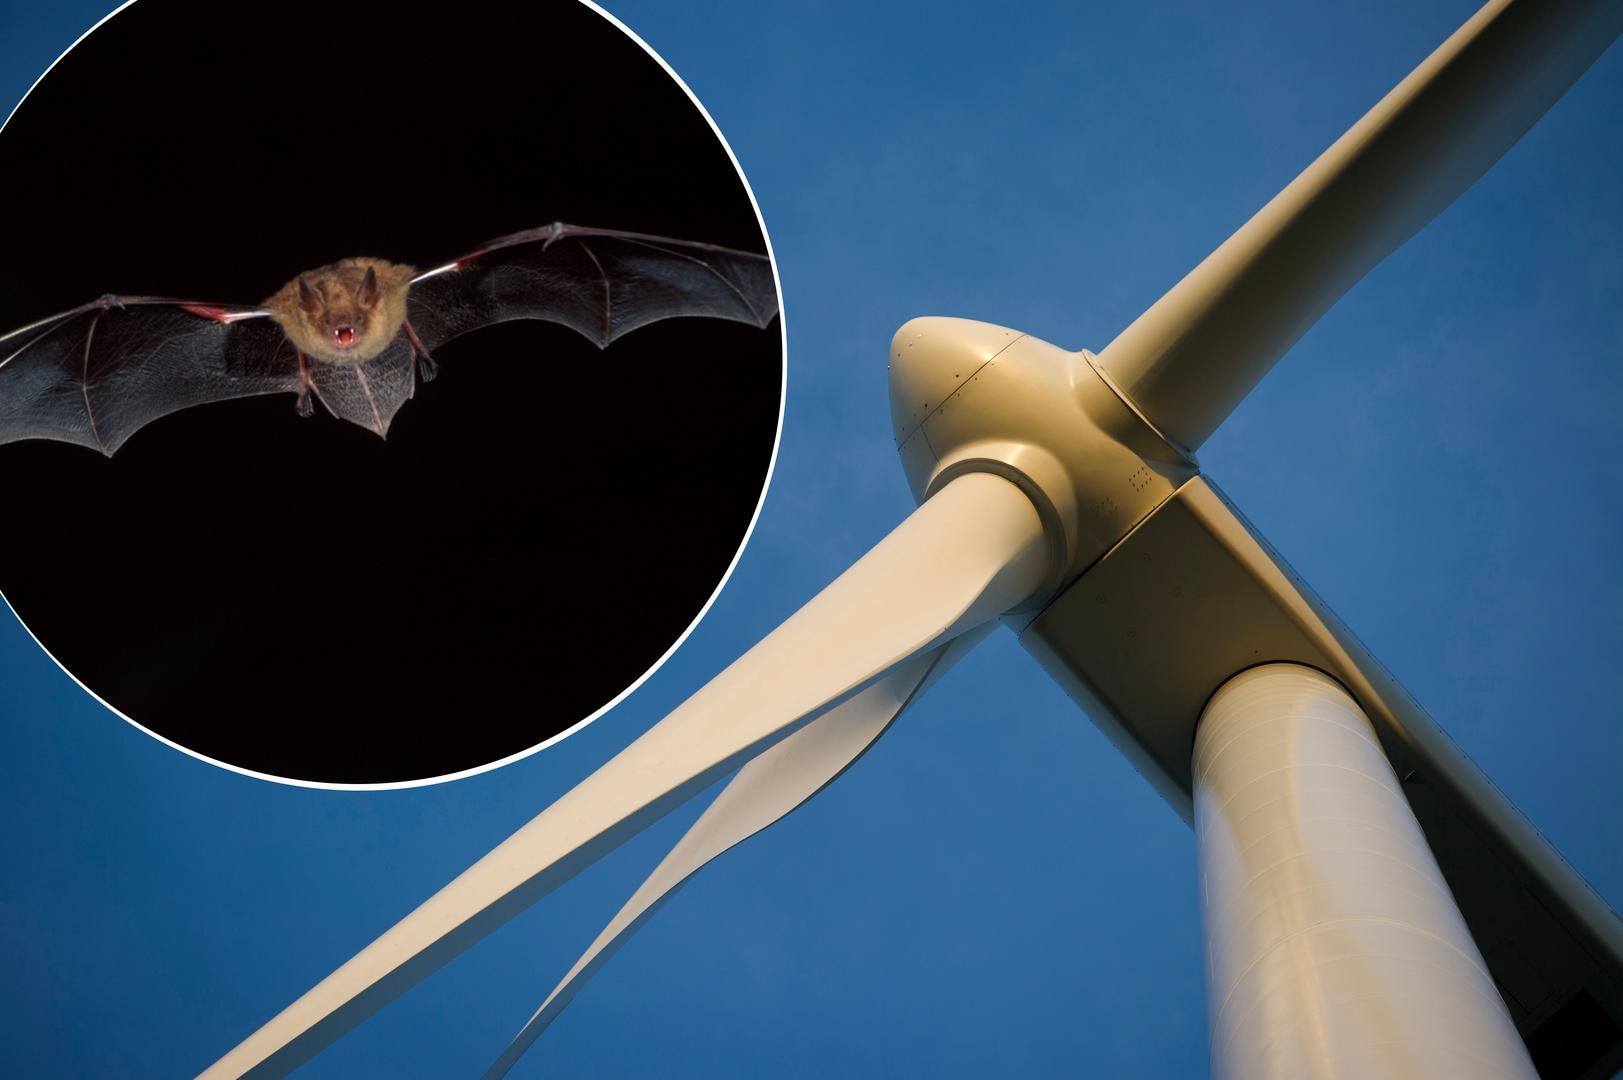 "Windmolens moeten stoppen met draaien als vleermuizen uitvliegen"